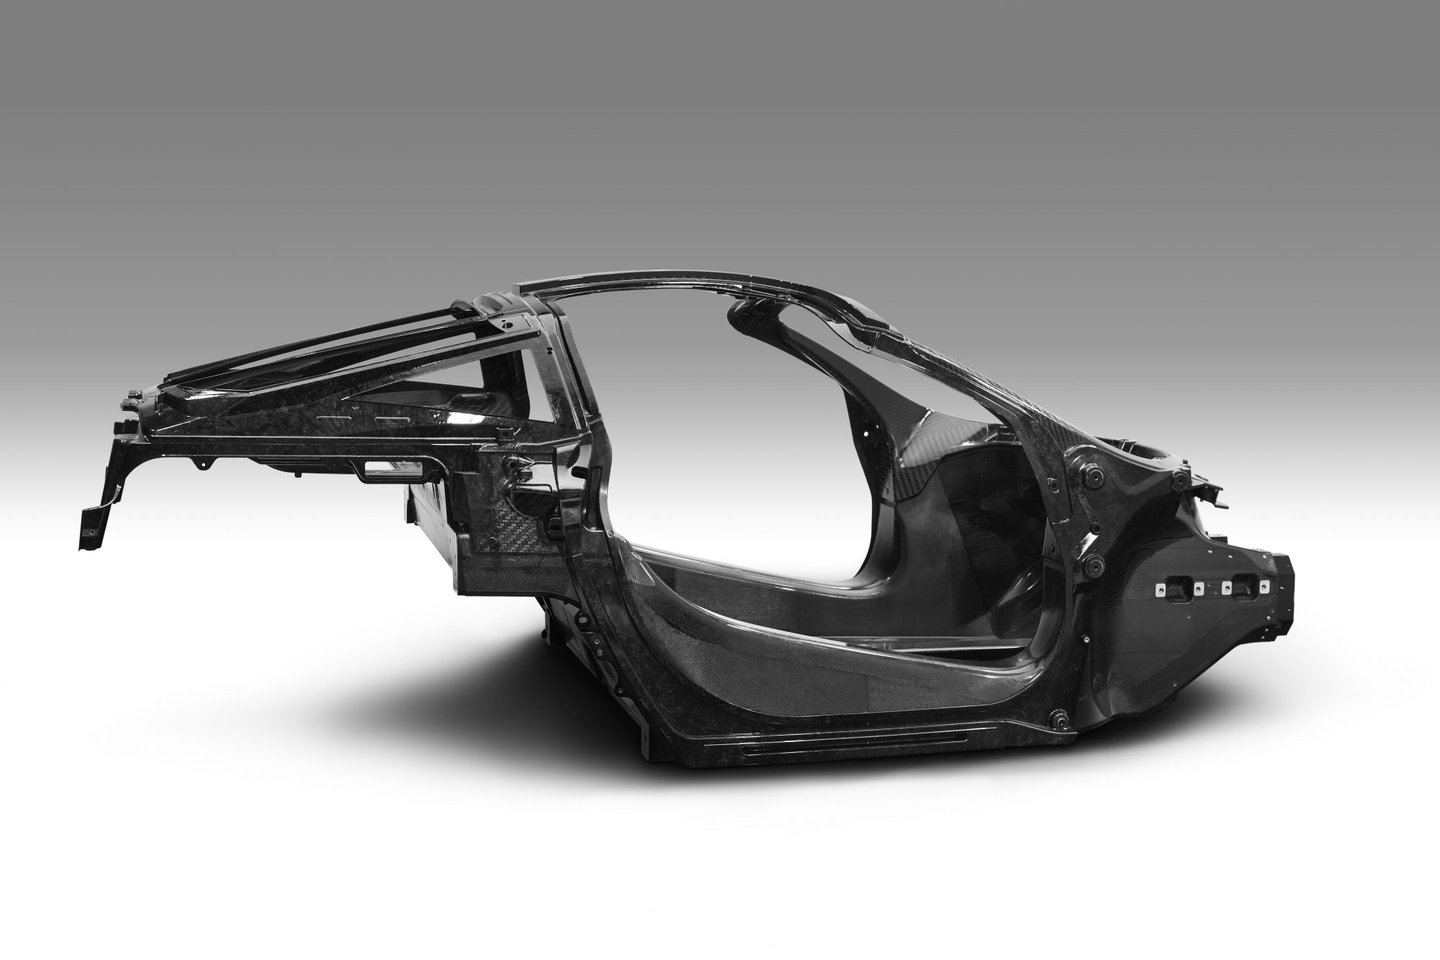 040117_McLaren Automotive Announces Second-Generation Super Series_Monocage II image_final